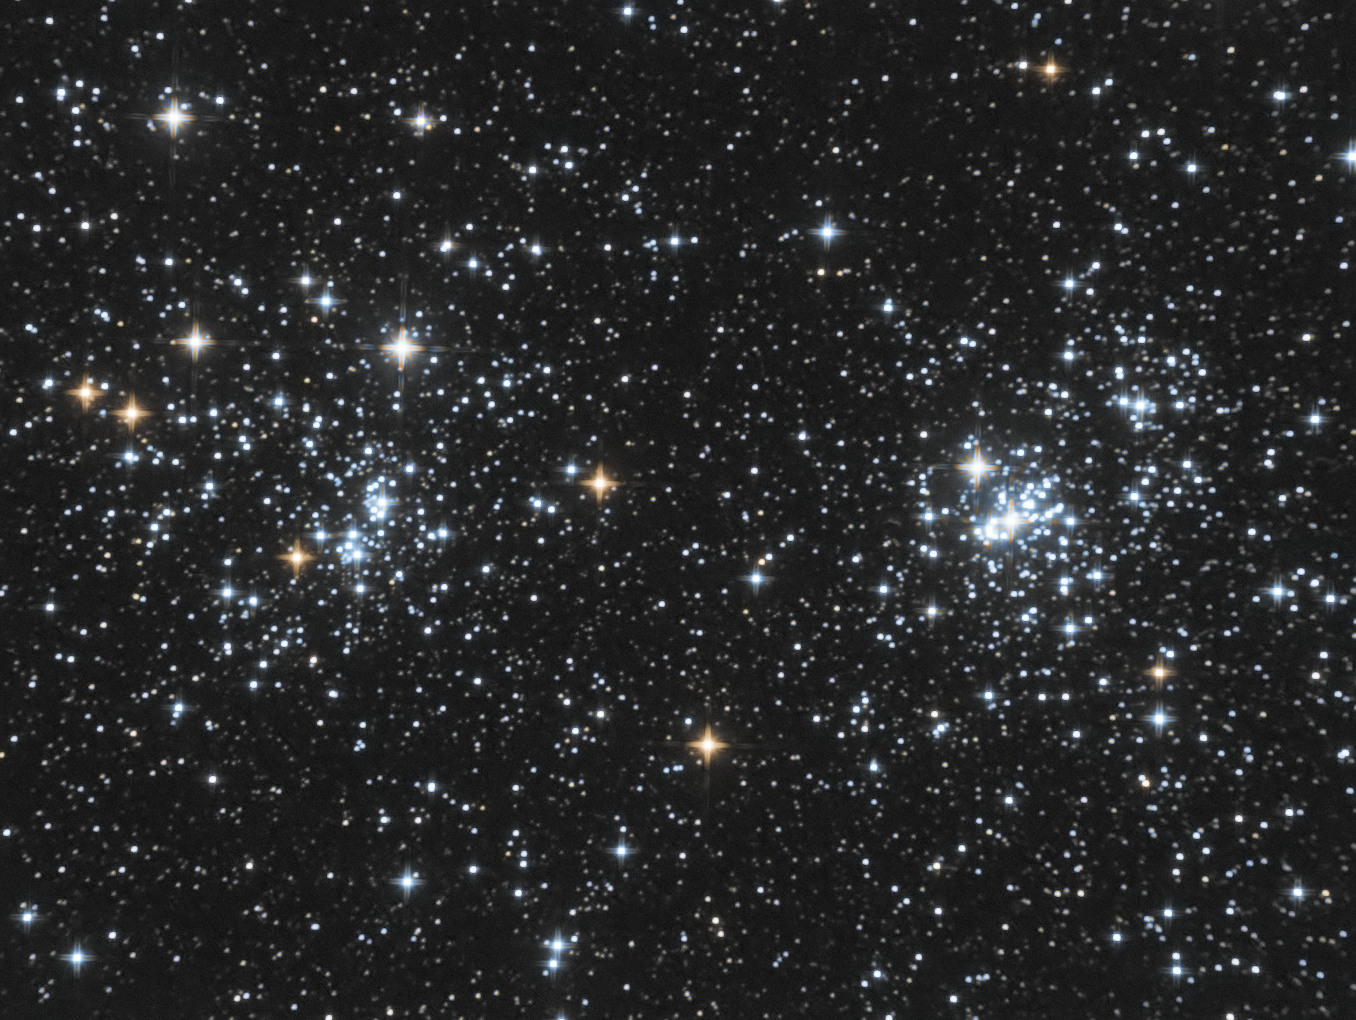 Perseus-Double-Cluster_W12-26x60s_R-70x60s_G-35x60s_APP_S15-3-25_SA-35-25_G94_NEAT.jpg